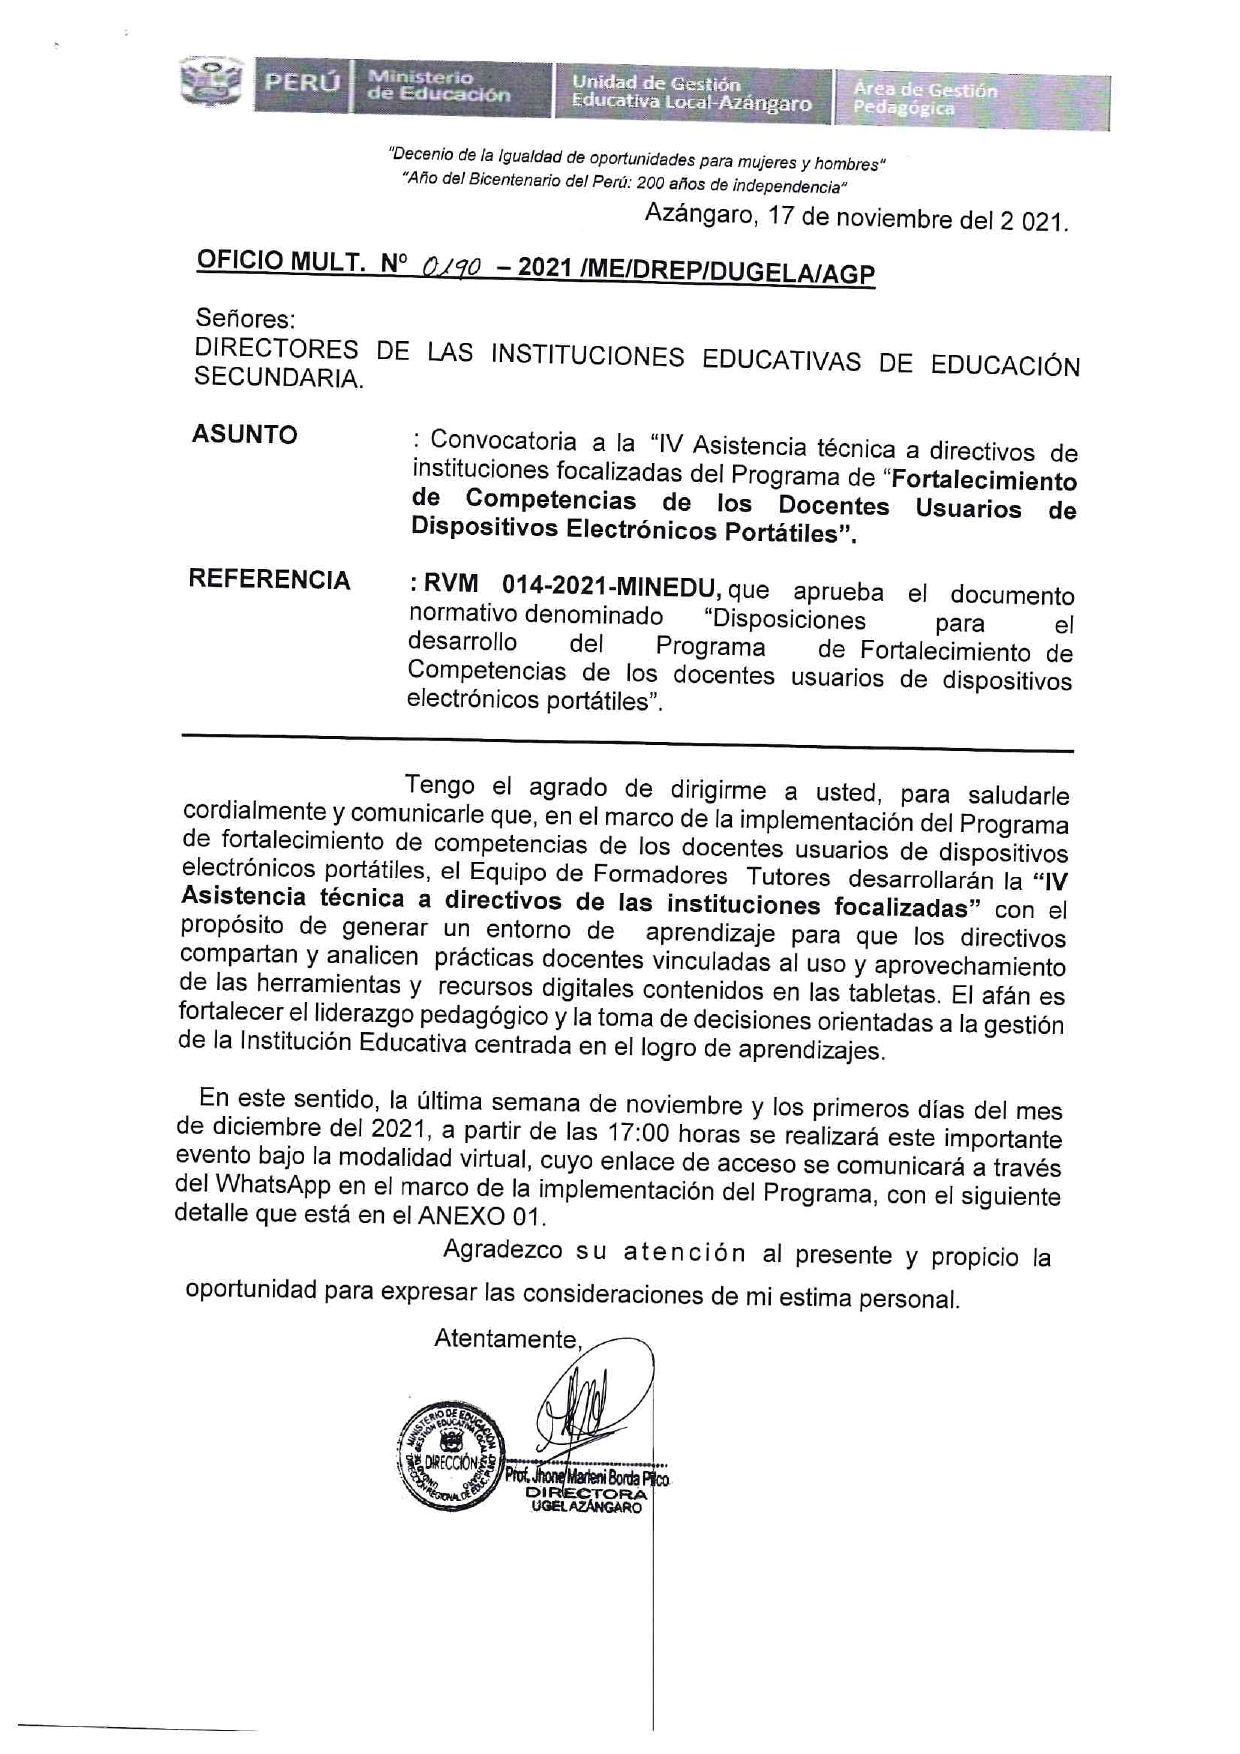 Oficio Multiple N° 0170 2021 Convocatoria Iv Asistencia TÉcnica A Directivos Focalizados Del 8838